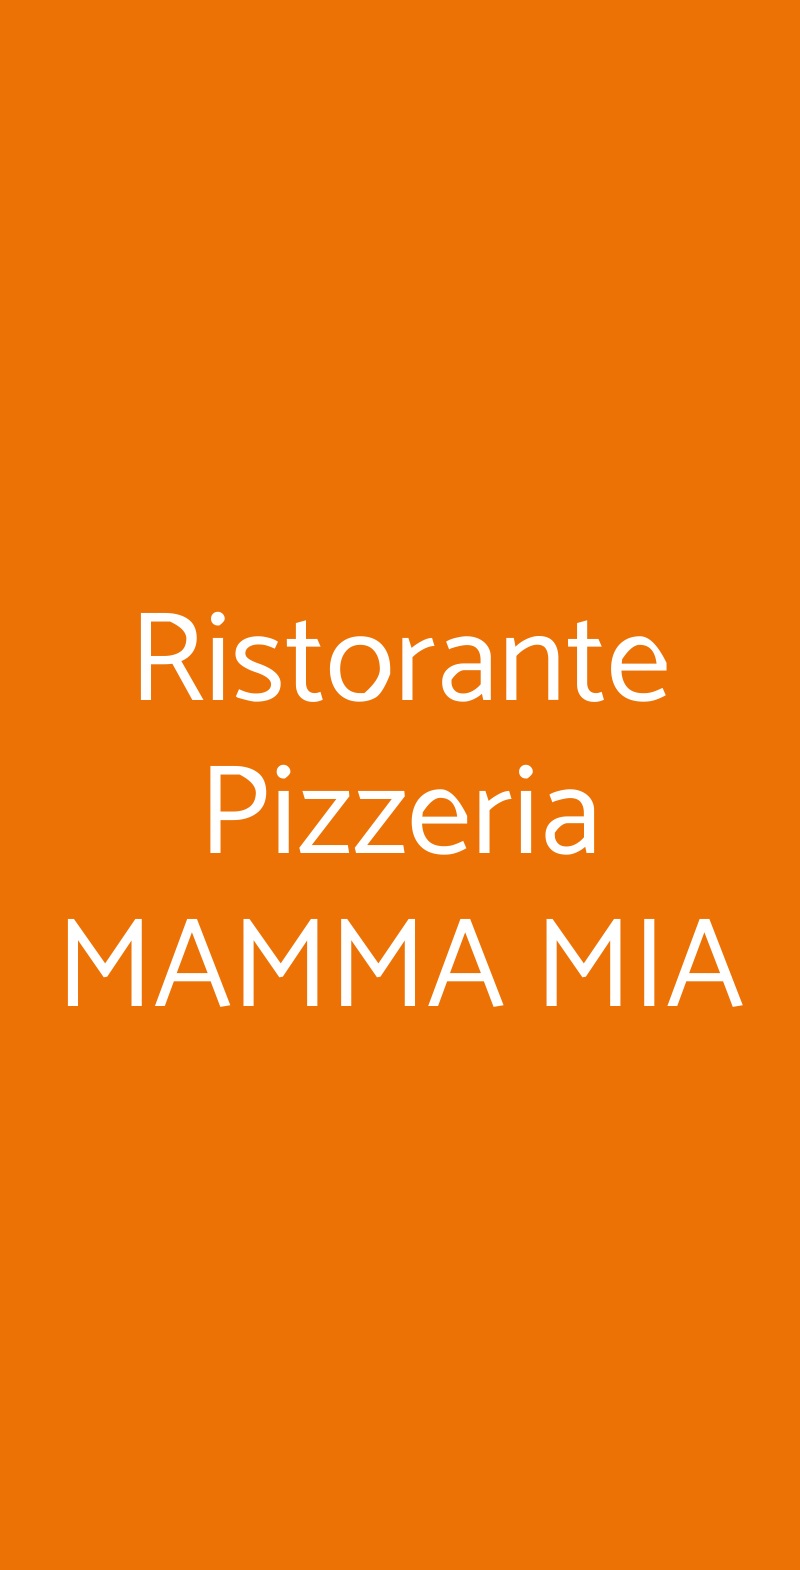 Ristorante Pizzeria MAMMA MIA Torino menù 1 pagina